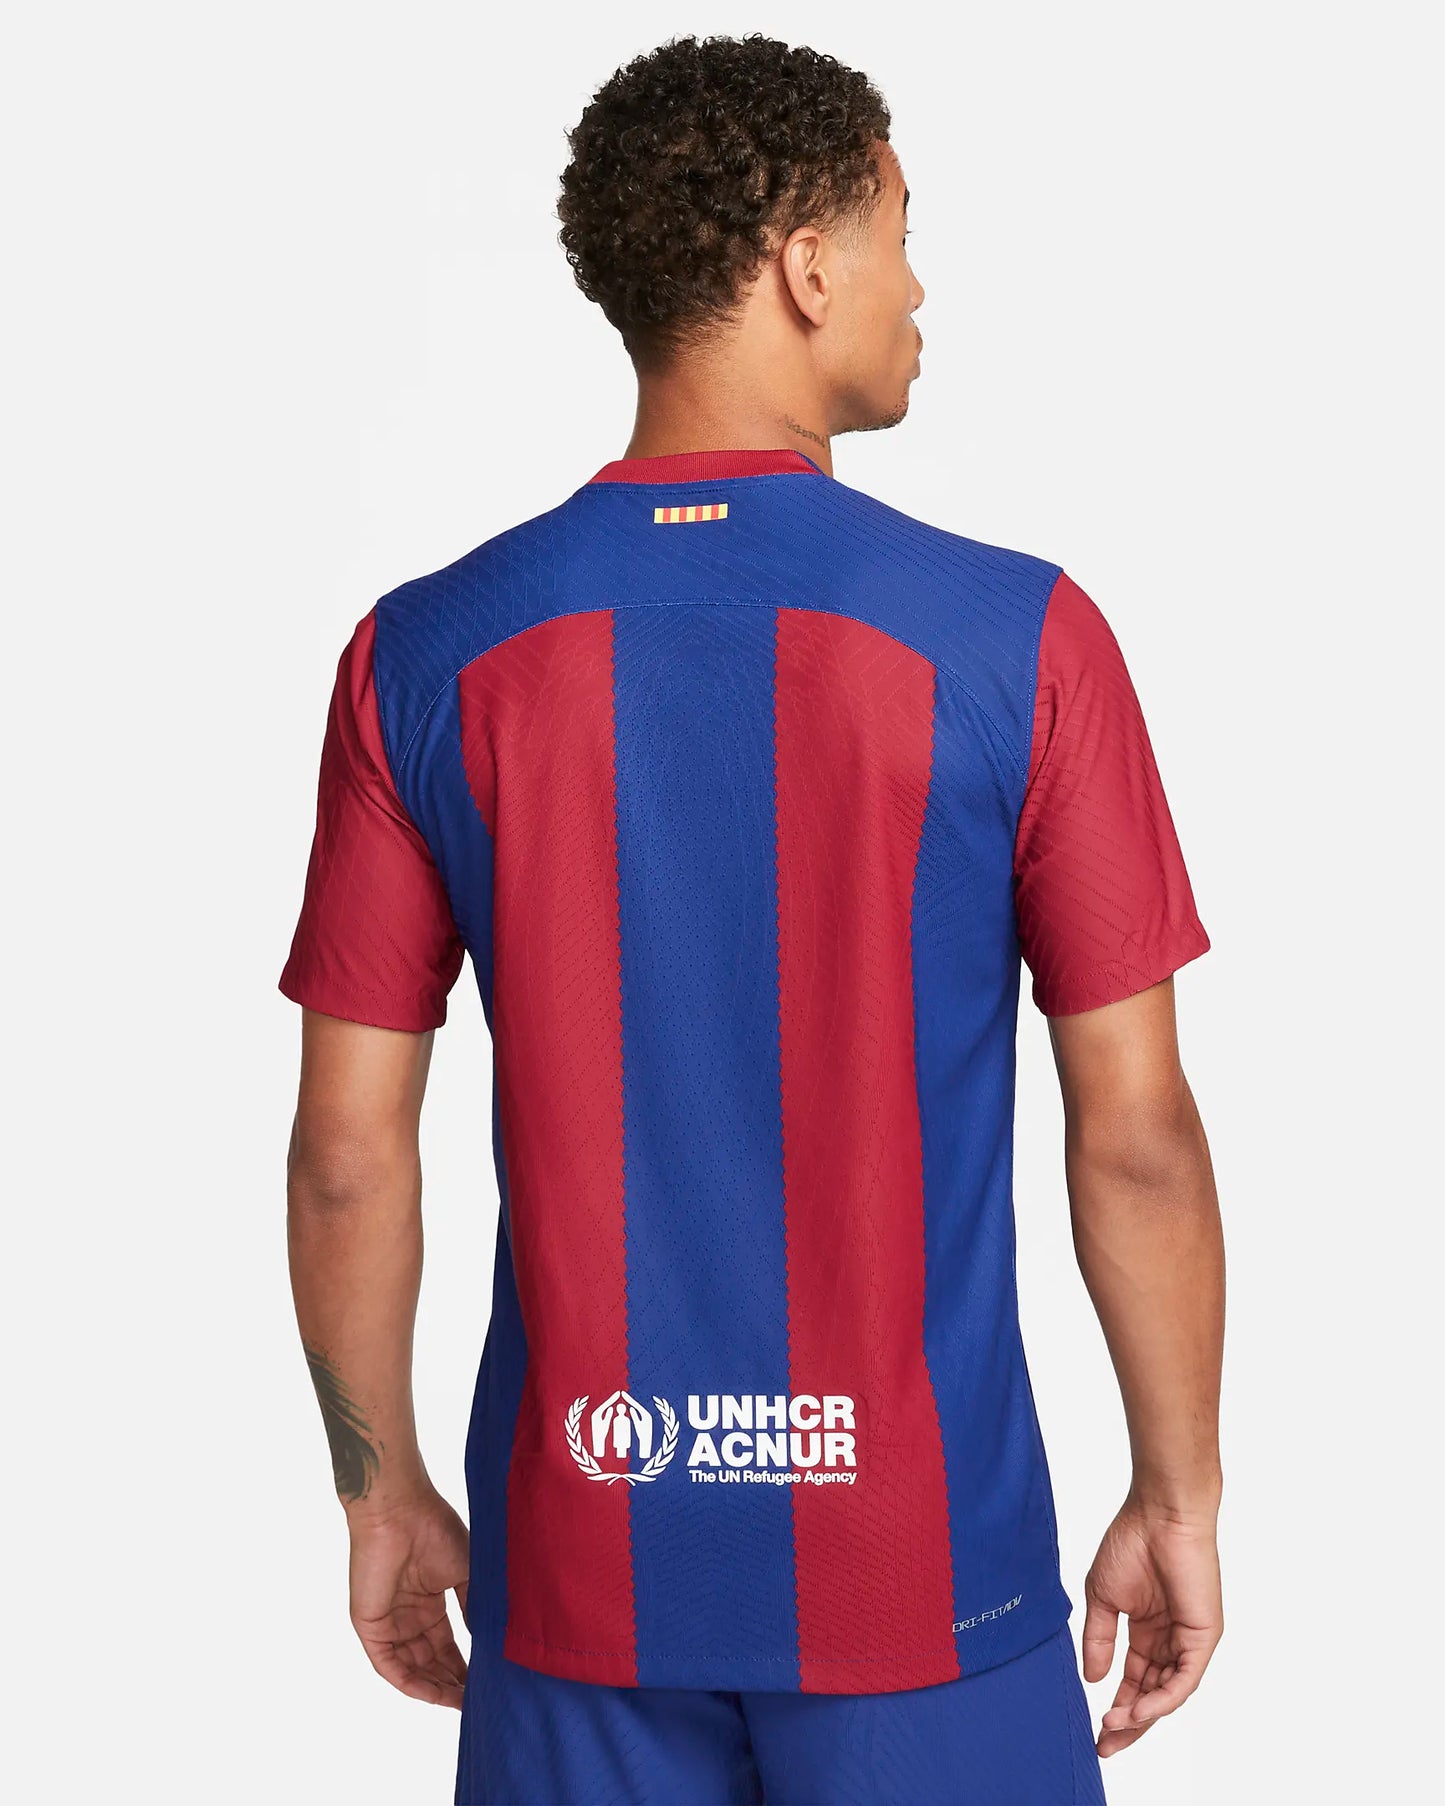 Nike FC Barcelona home shirt 23/24 Player's Edition